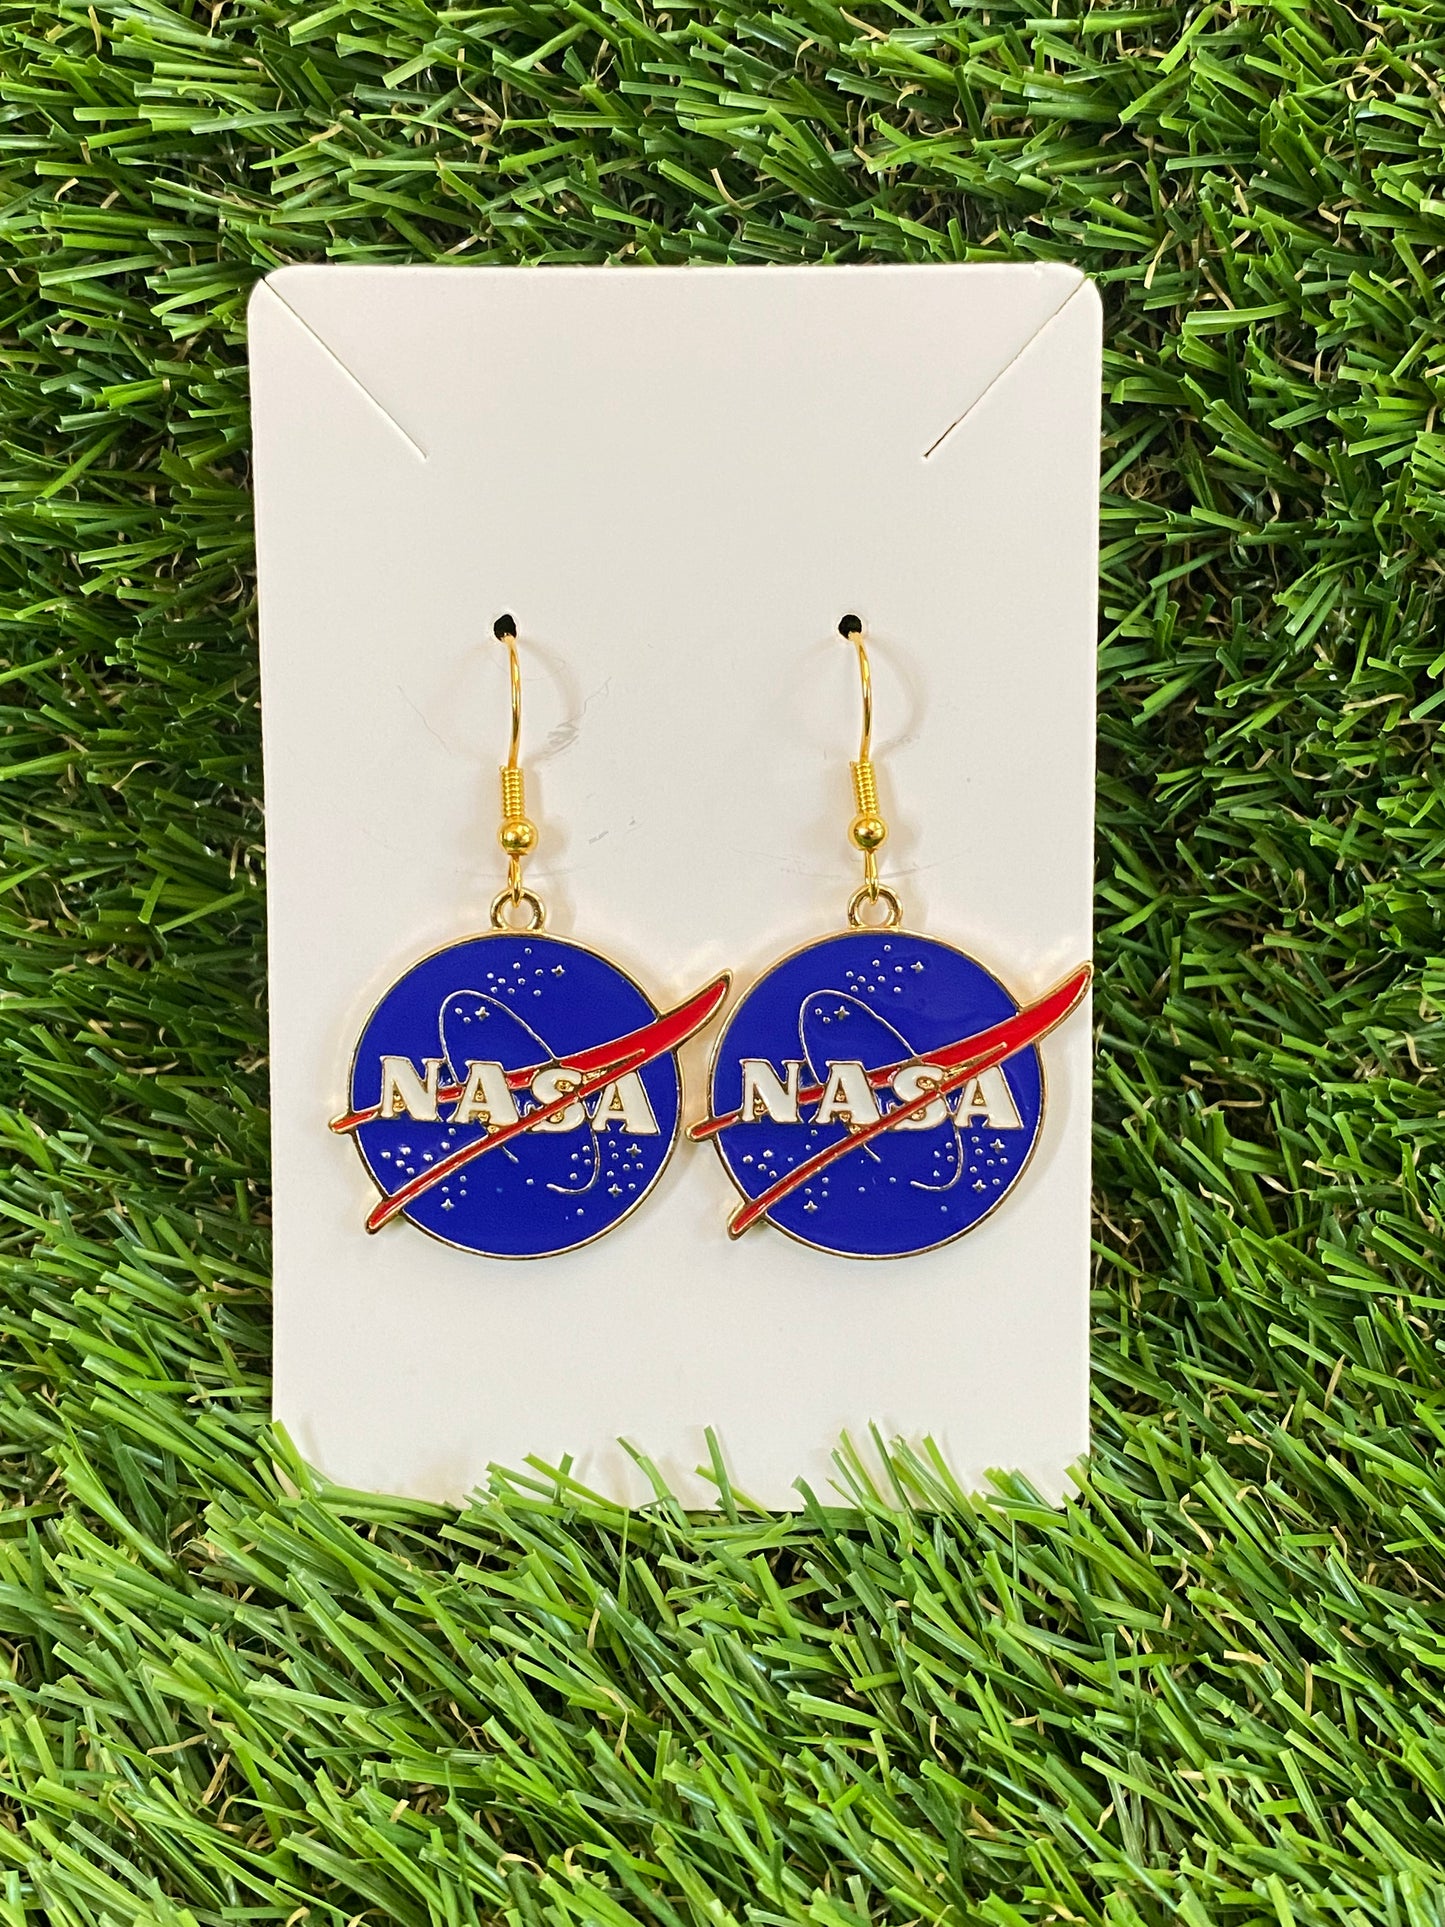 Nasa Earrings